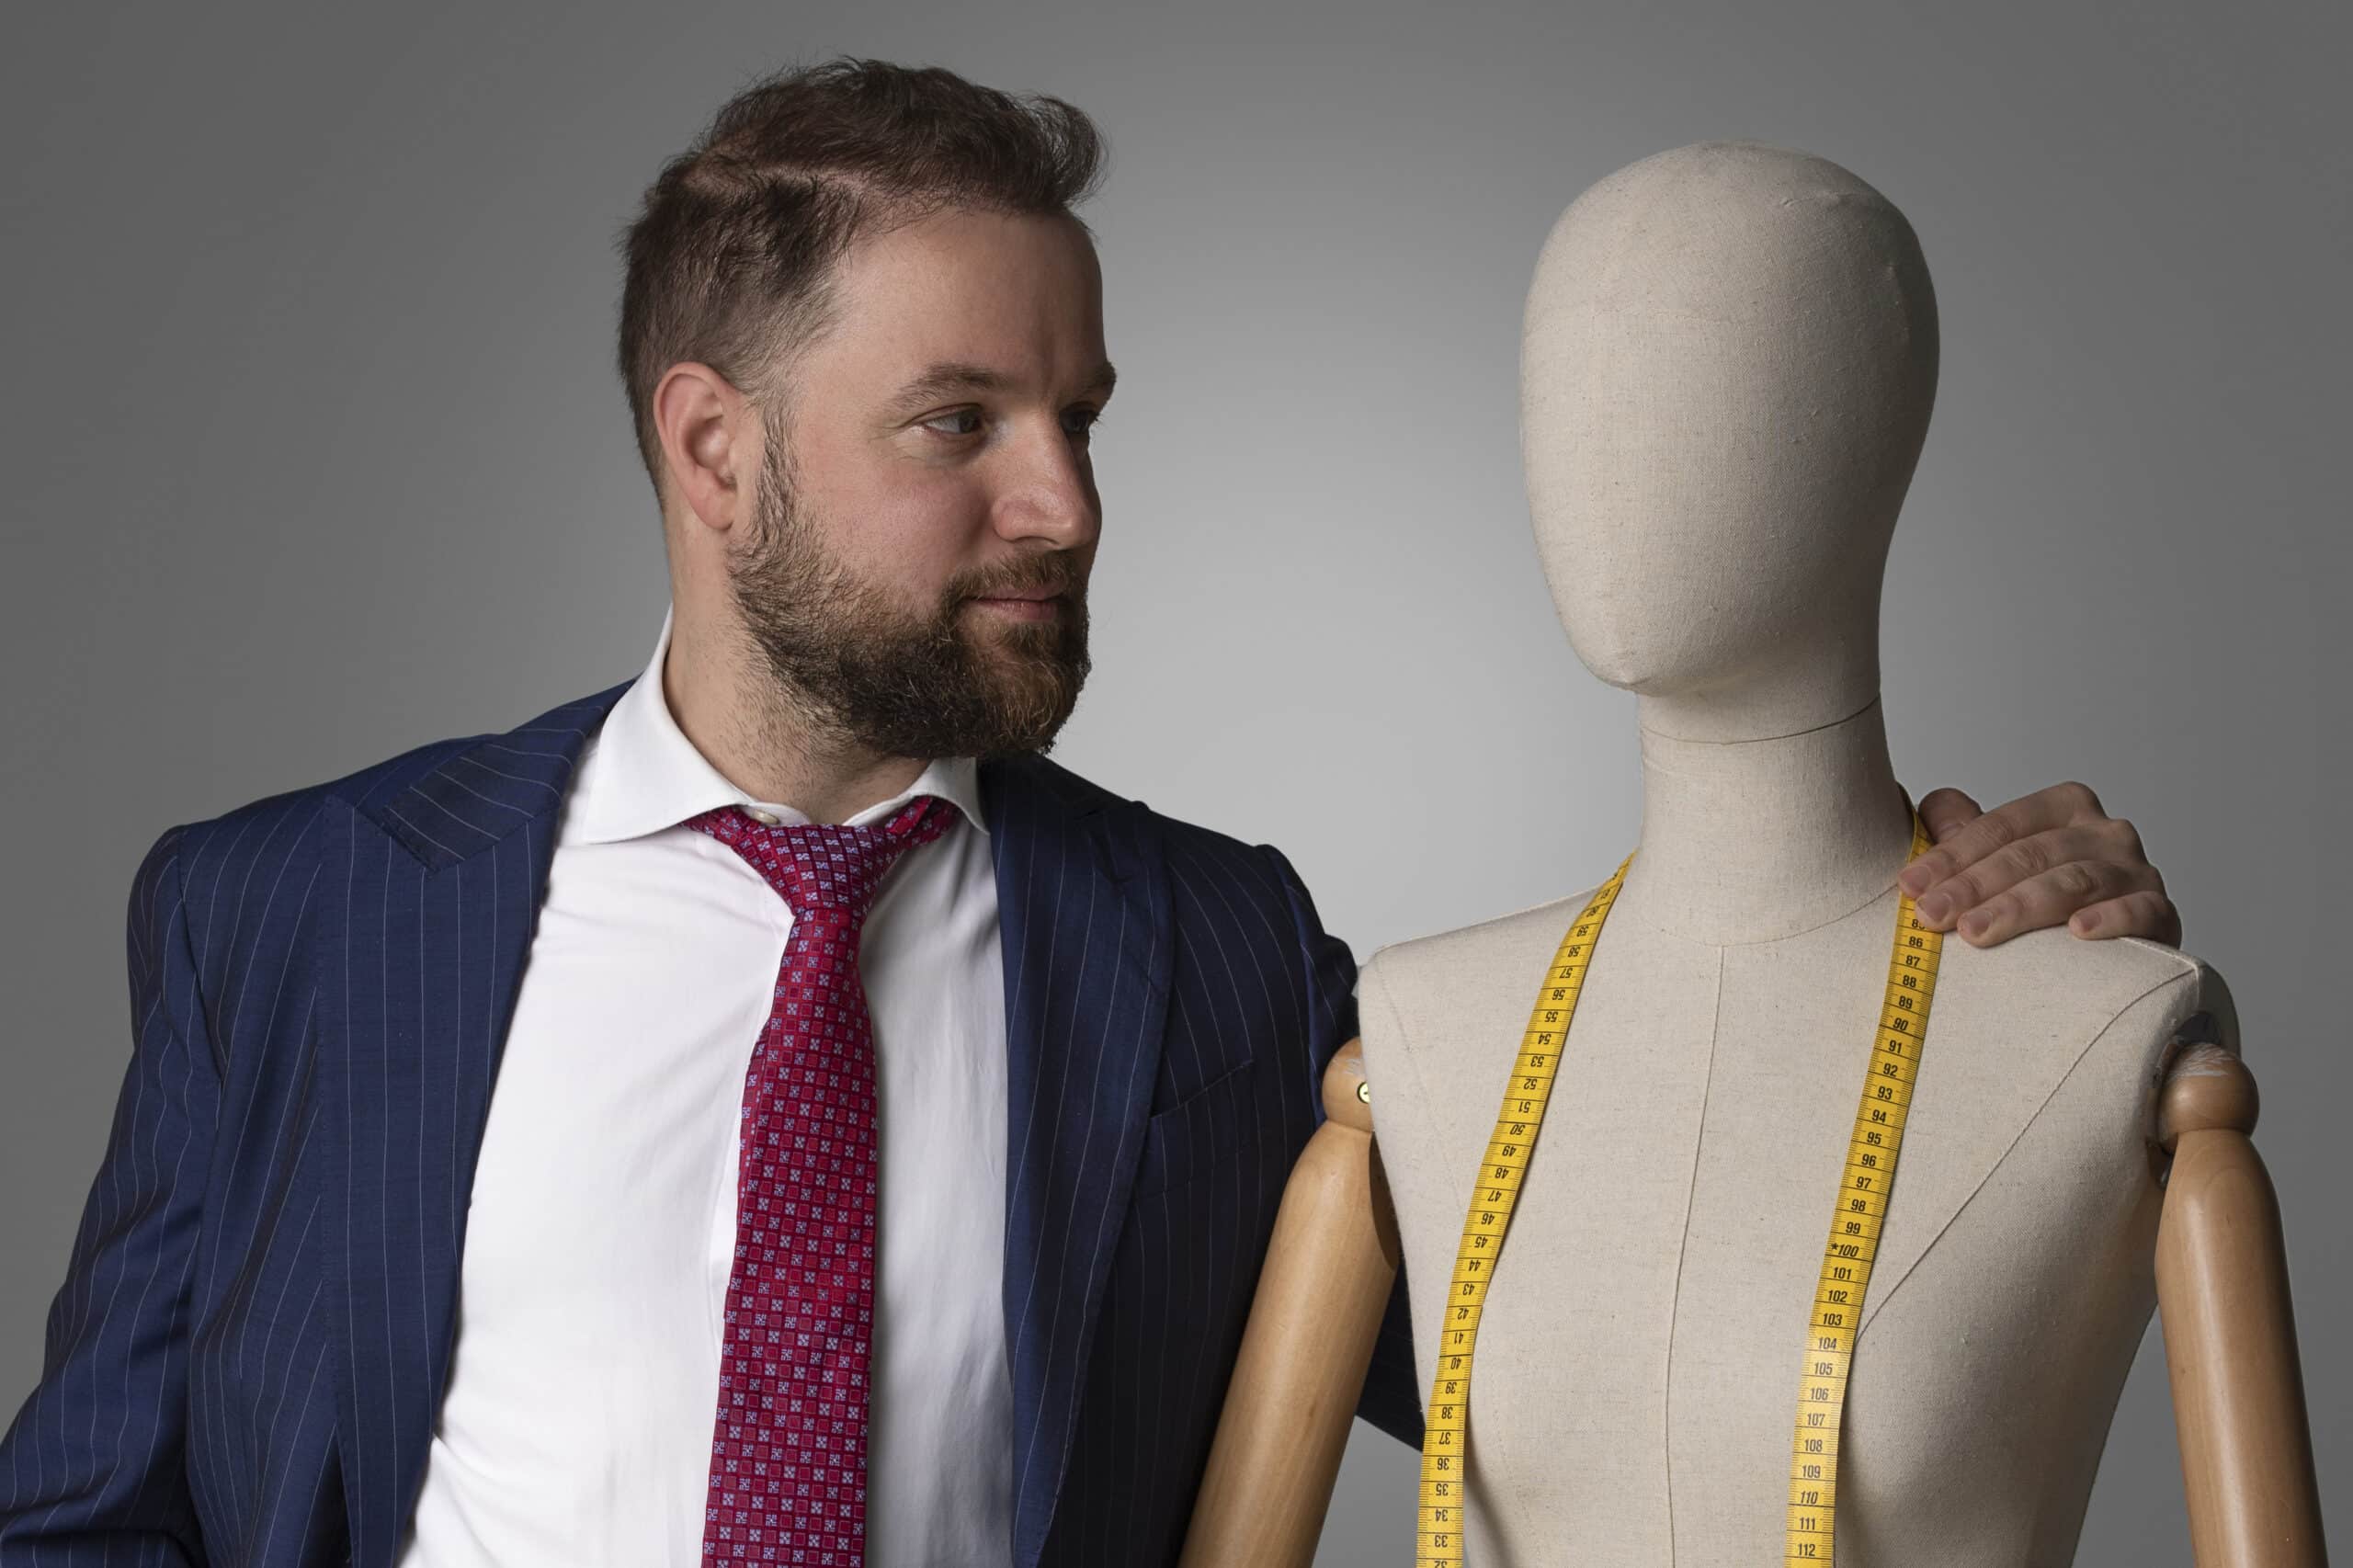 Un hombre trajeado está de pie junto a un maniquí, mostrando su marca de moda.